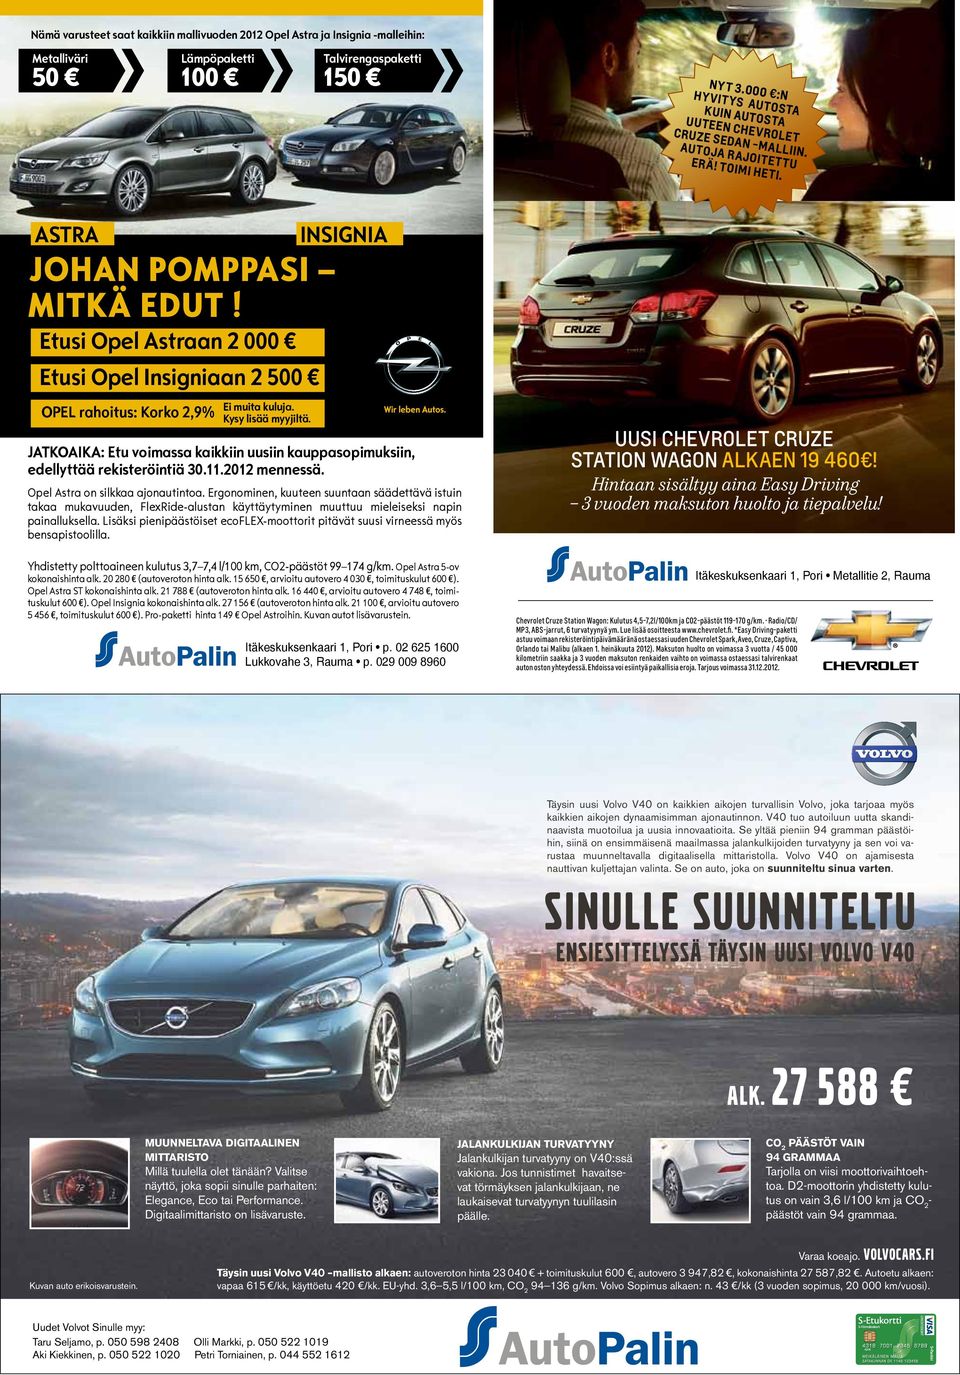 Etusi Opel Astraan 2 000 Etusi Opel Insigniaan 2 500 OPEL rahoitus: Korko 2,9% Ei muita kuluja. Kysy lisää myyjiltä.